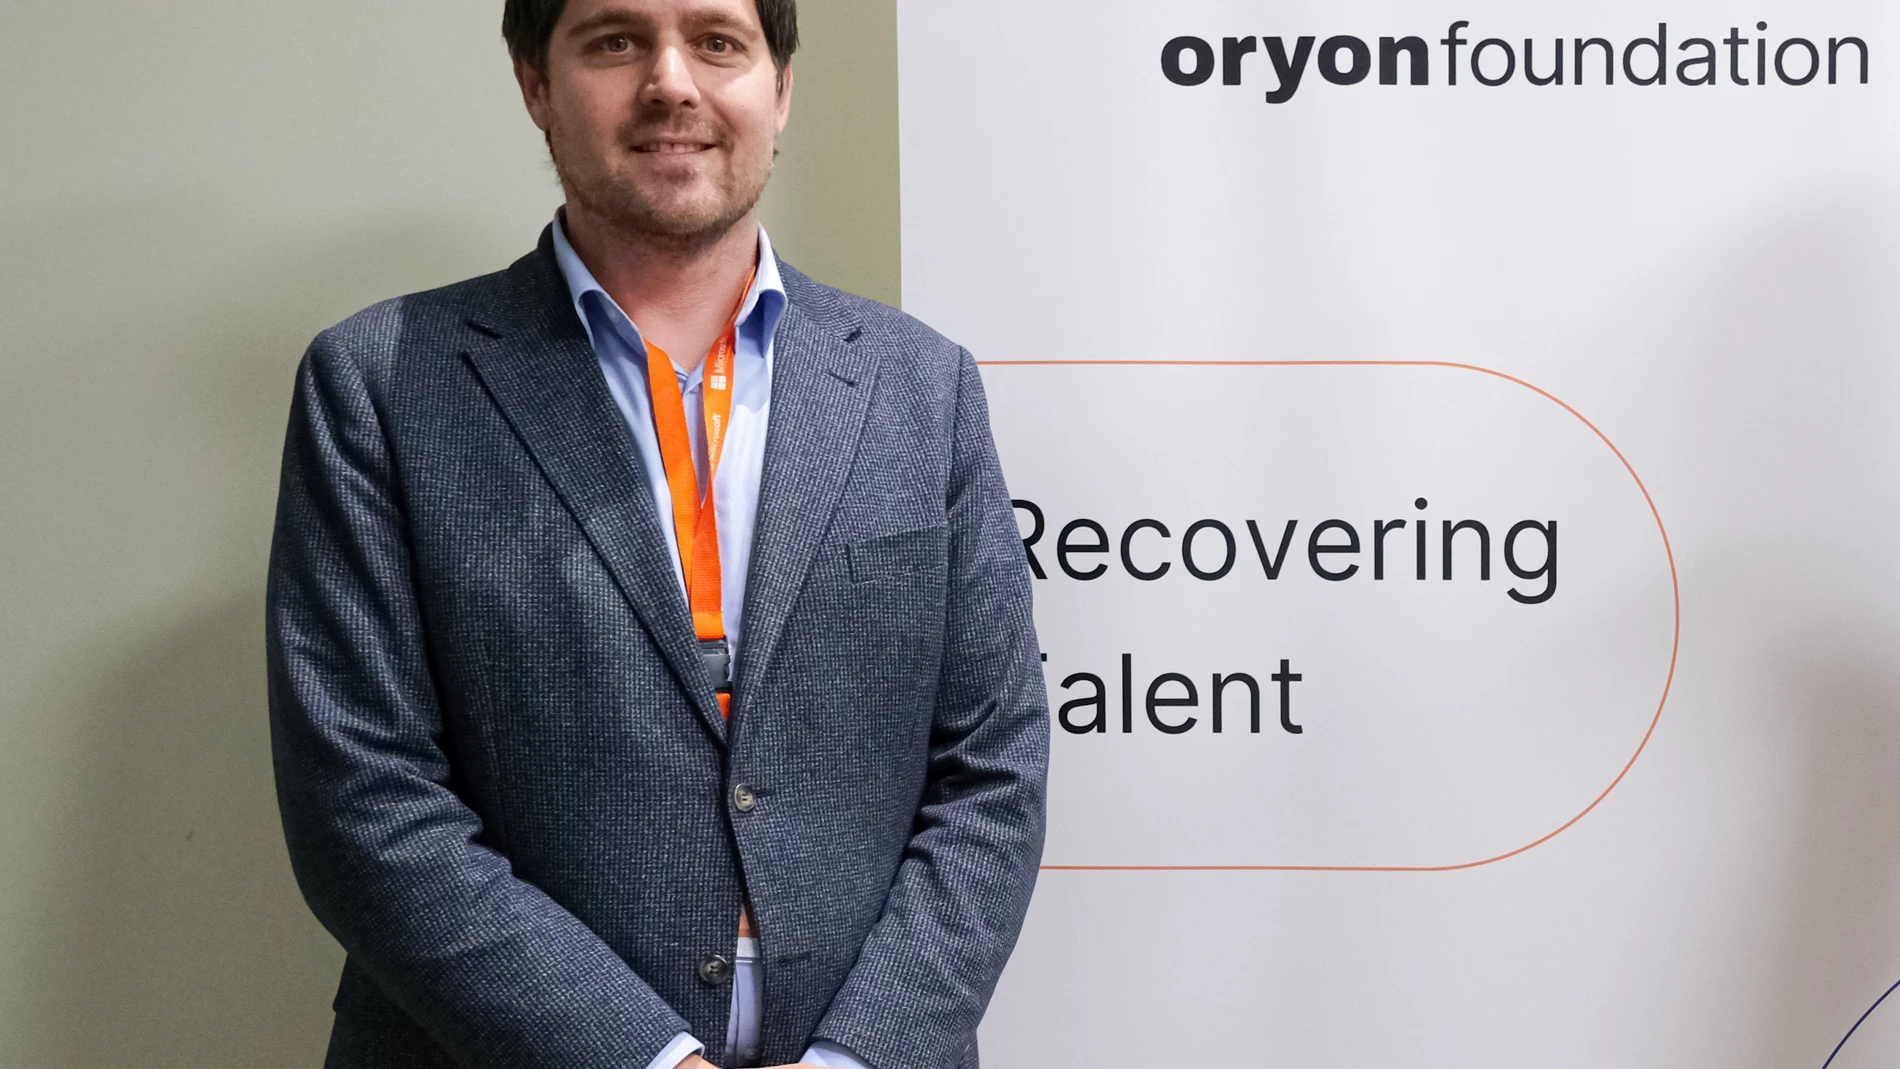 Víctor Giné es el fundado y CEO de Oryon Universal, cuya una de los principales iniciativas es su fundación